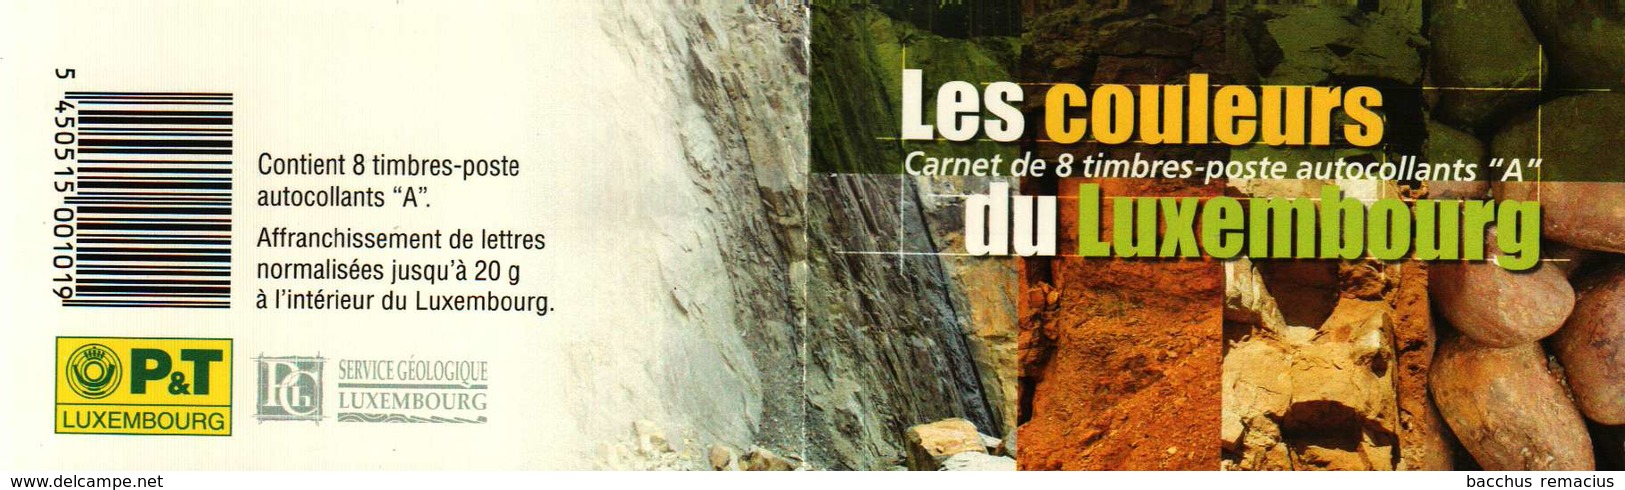 Luxembourg Carnet De 8 Timbres "A"  Autocollants Formations Géologiques  Gesteinsformationen 2005 - Carnets